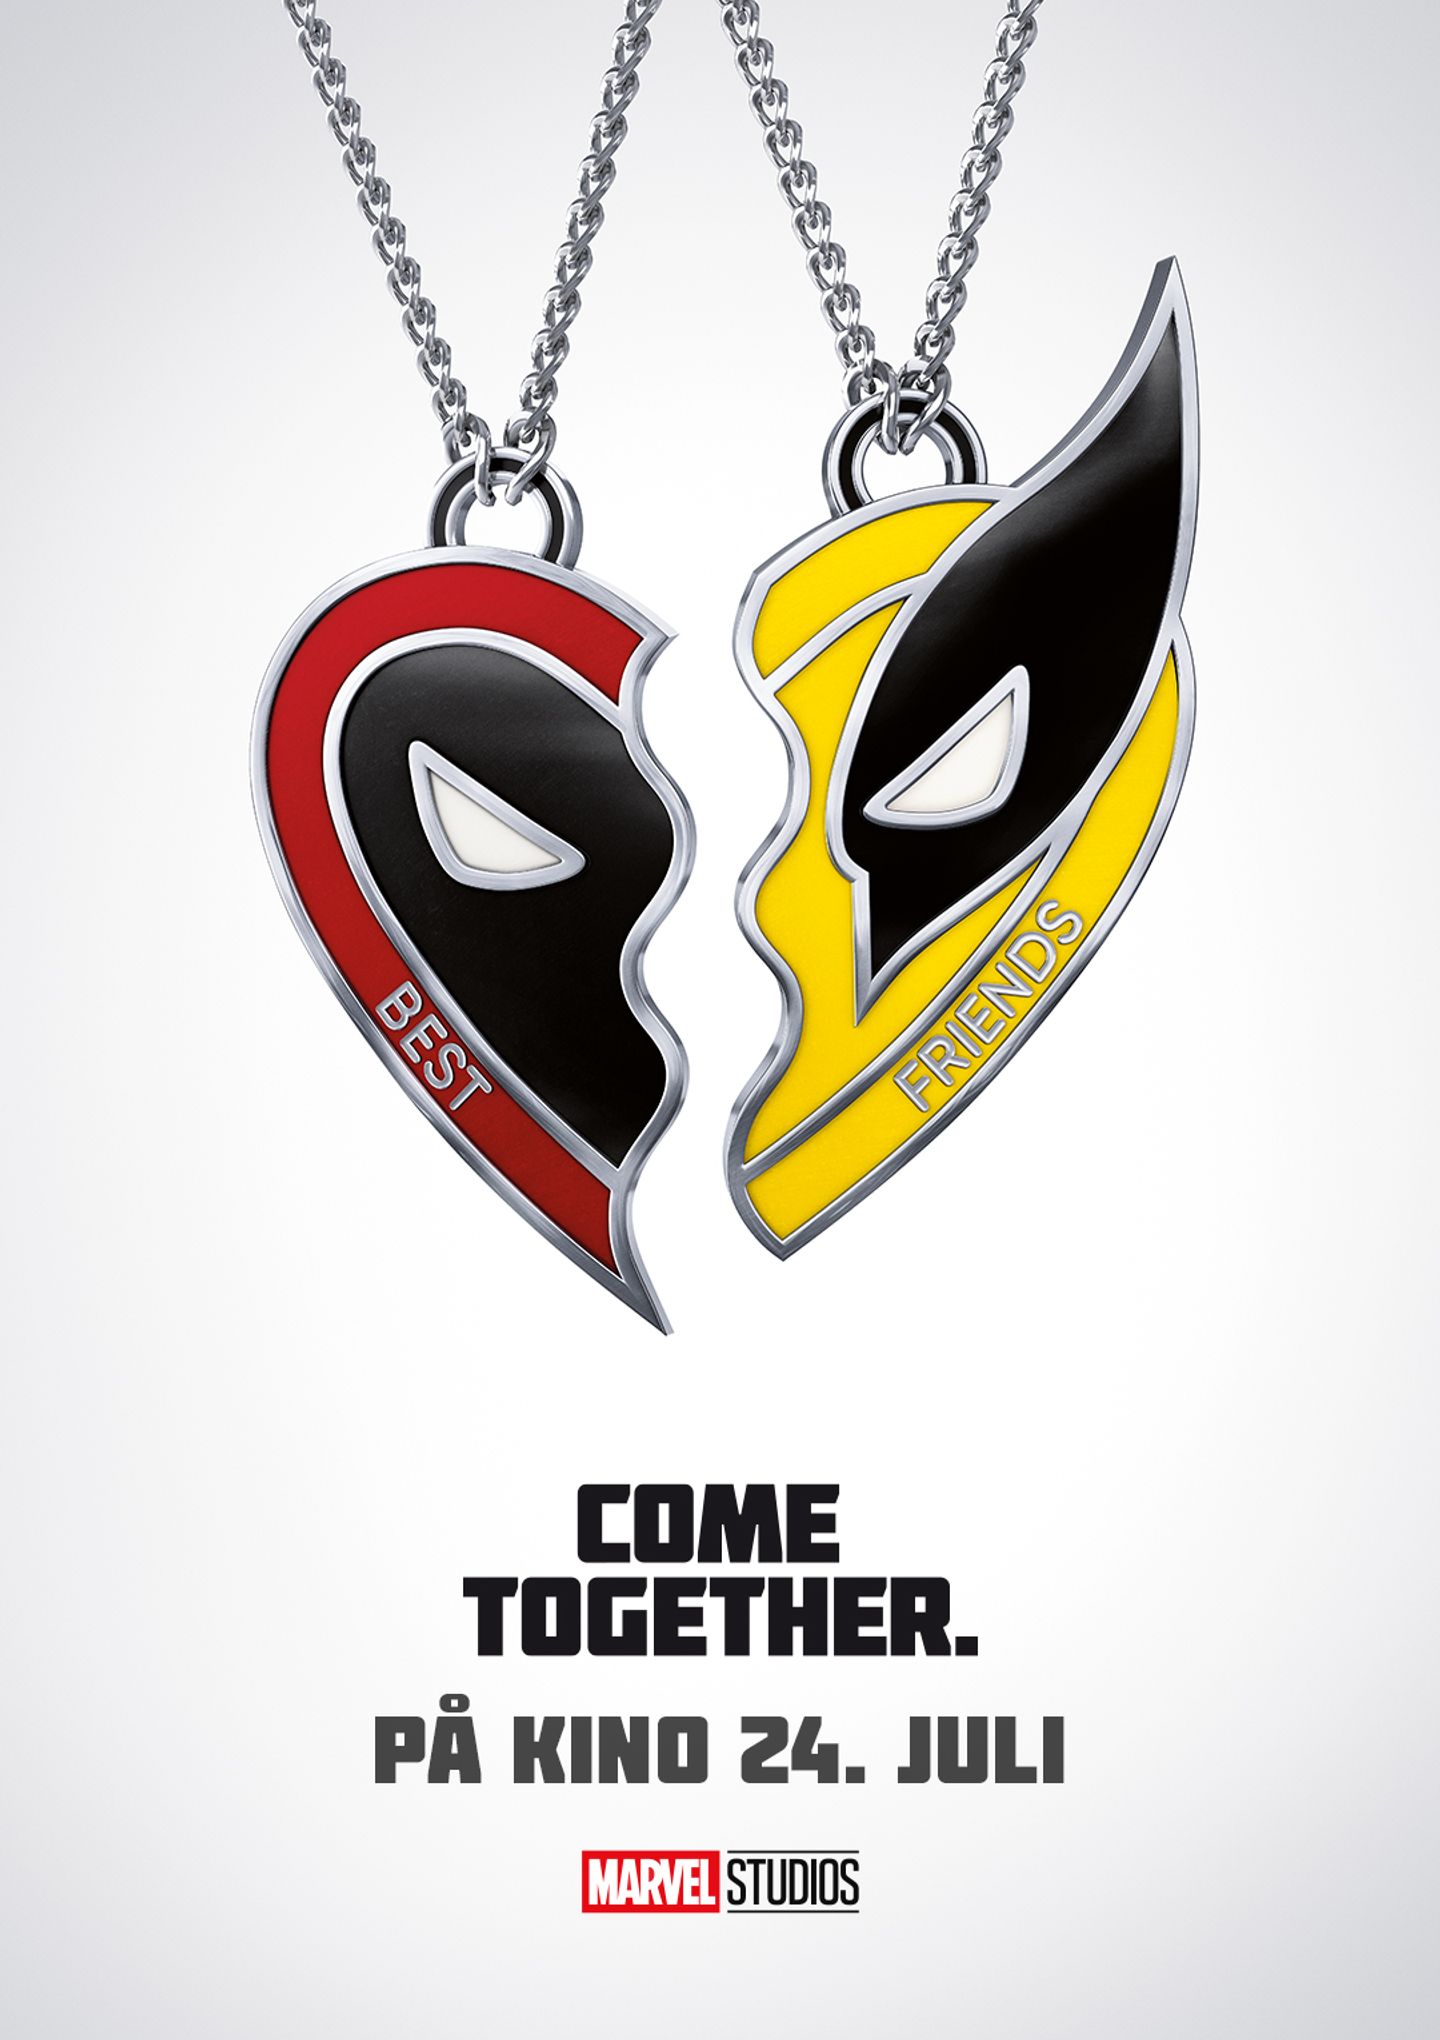 Plakat for 'Deadpool & Wolverine'